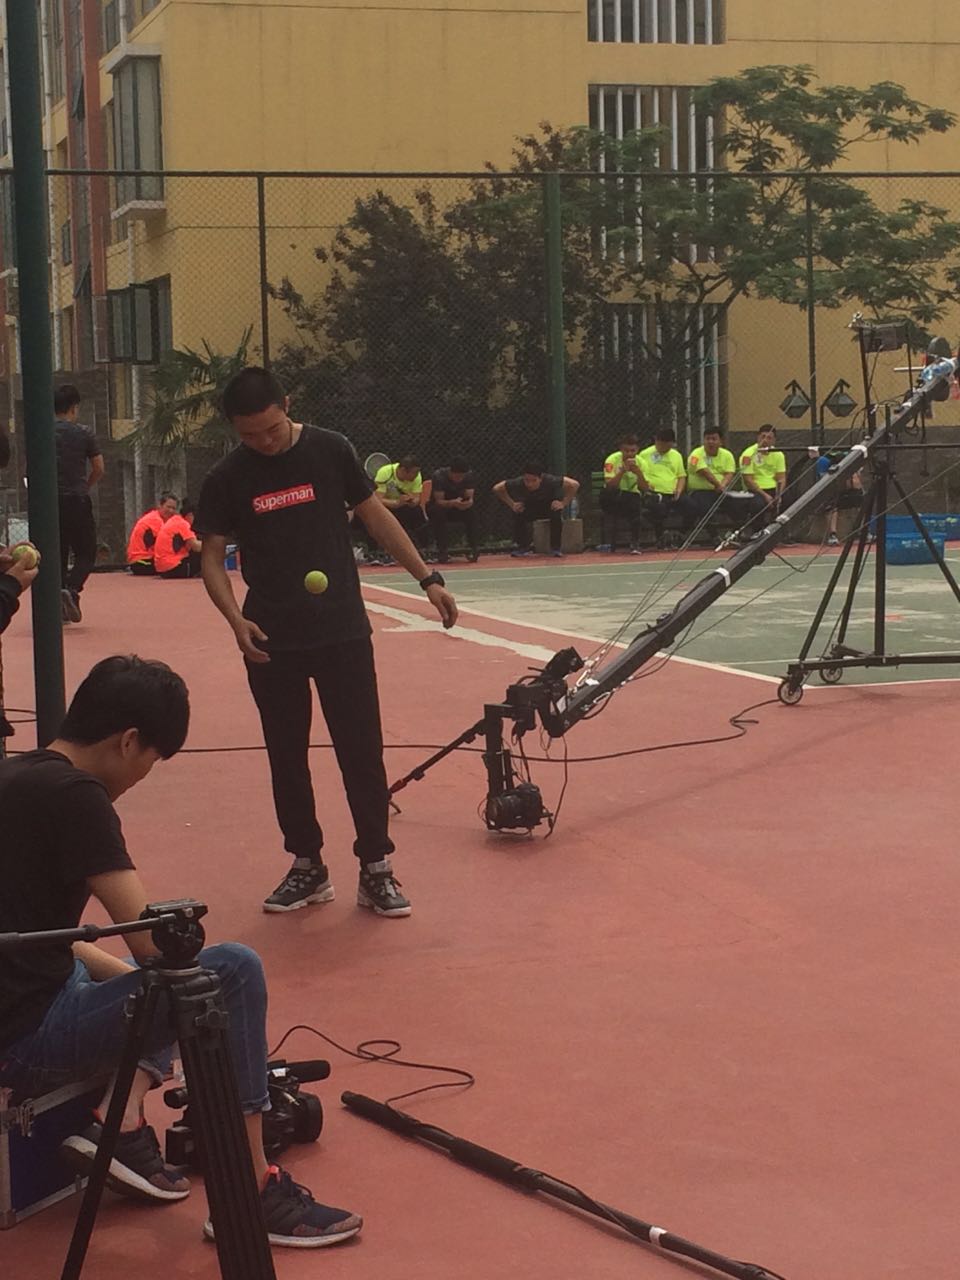 减肥争霸赛在鑫苑名家网球场进行拍摄